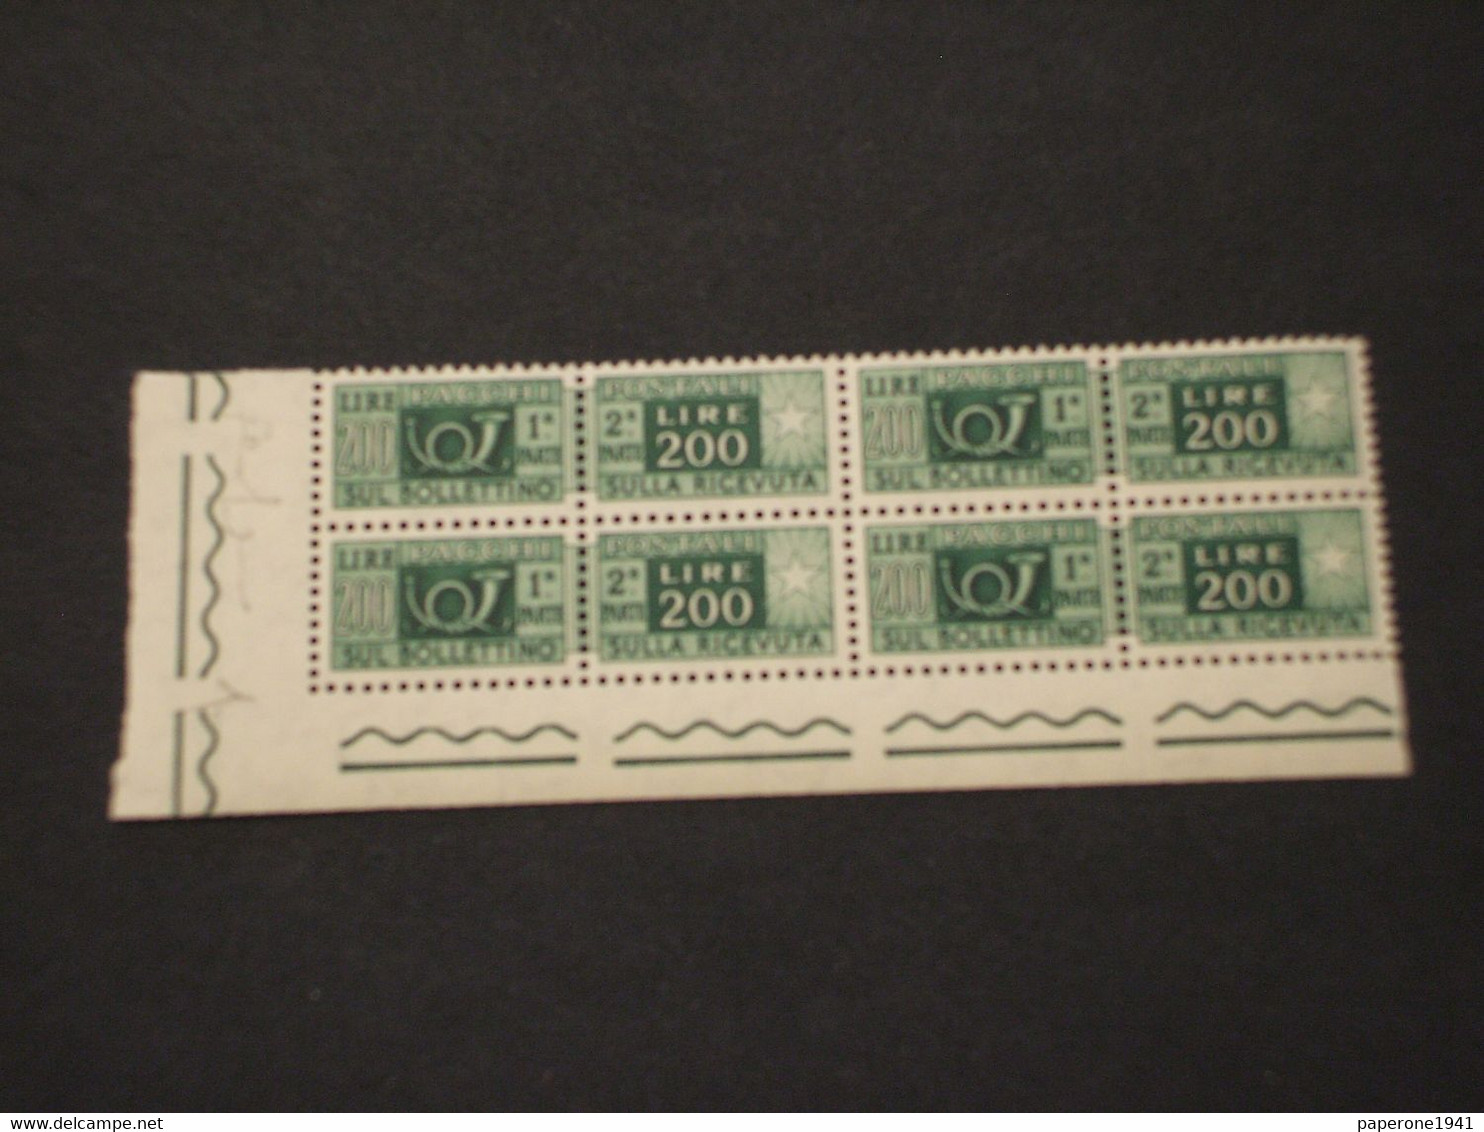 ITALIA  REPUBBLICA - PACCHI POSTALI - 1955 CORNO L. 200, Stelle 4a, In Quartina - NUOVO(++) - Paketmarken